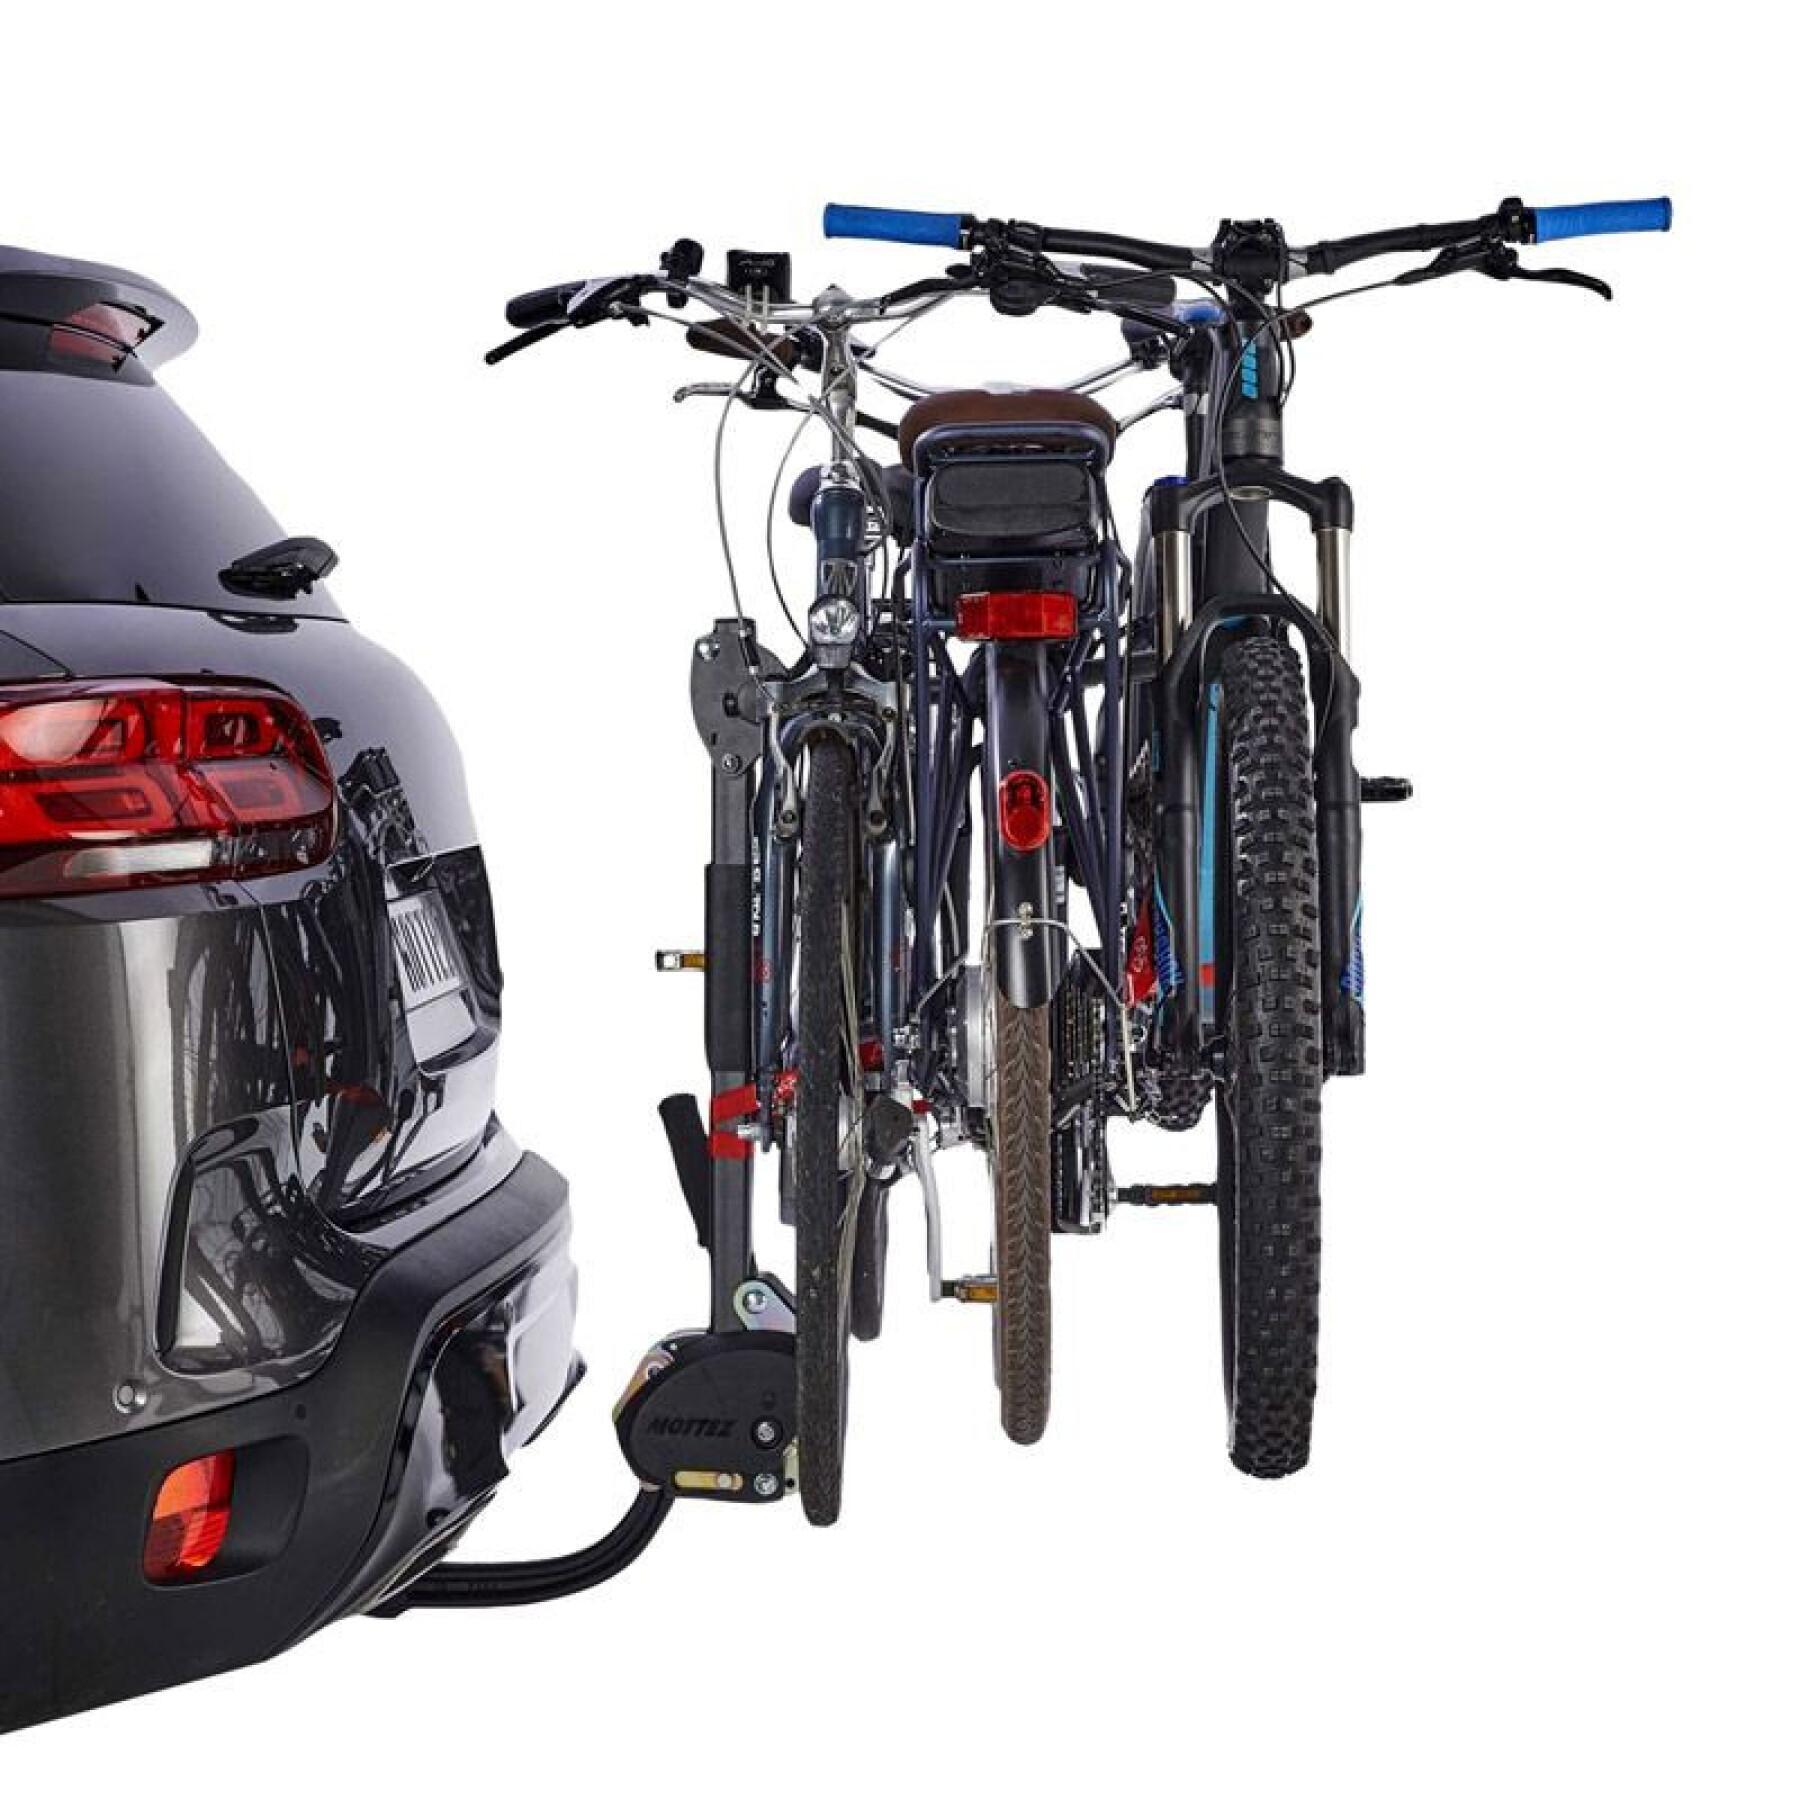 Suporte de bicicleta suspenso para 3 bicicletas vae- e-binclinável com dispositivo anti-roubo, sistema fácil de montagem rapide - fabrico francês Mottez Hercule homologue ce - 60 kgs